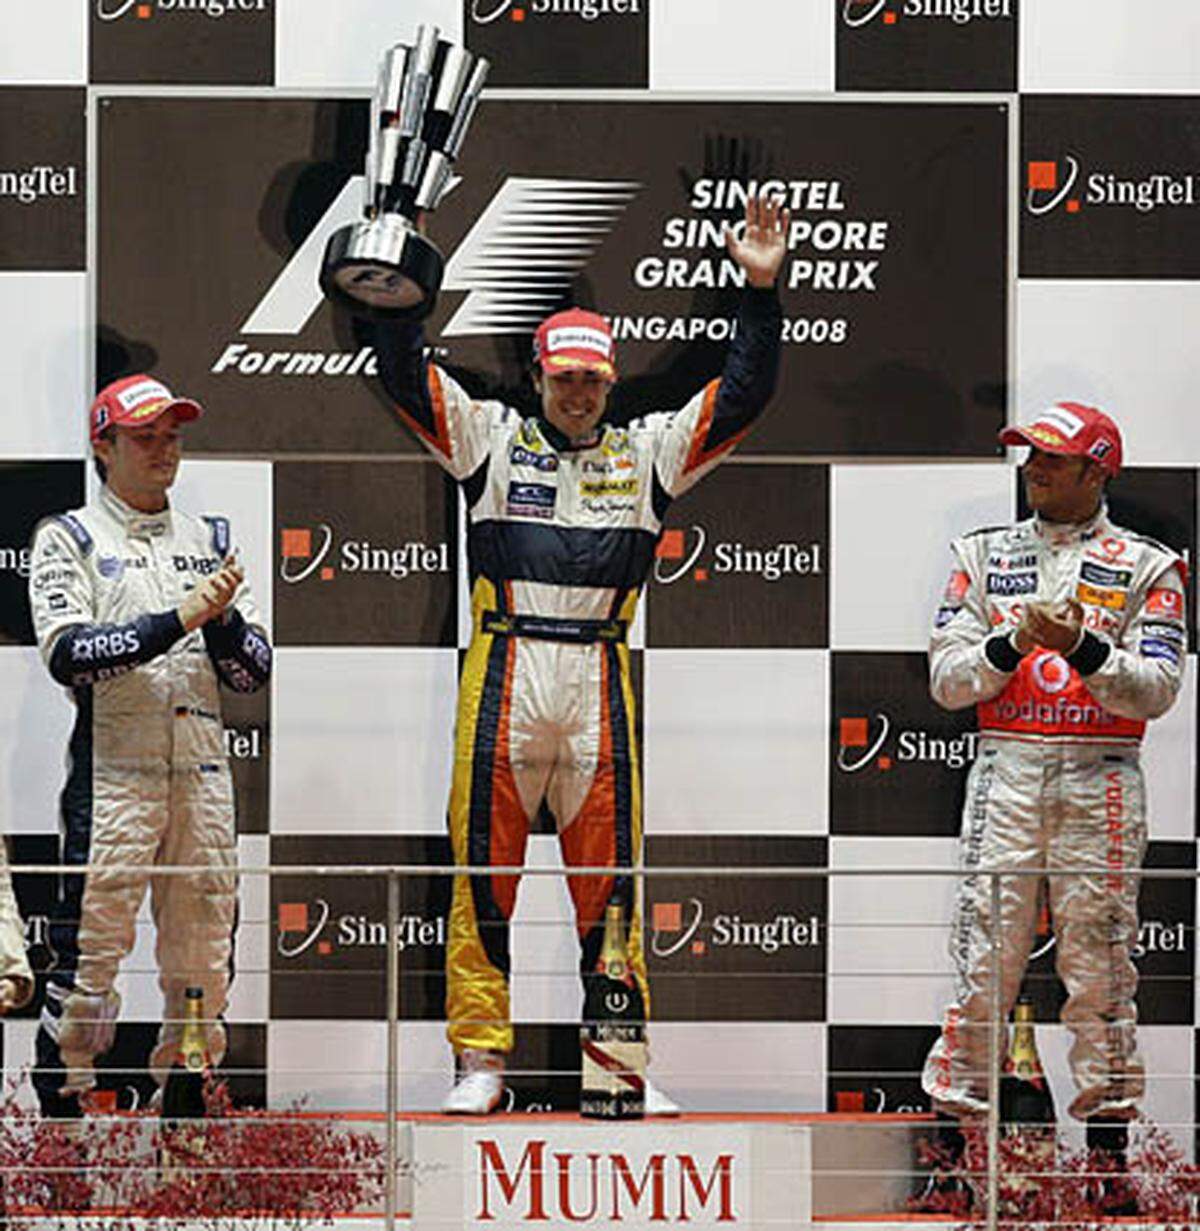 Streckenbezeichnung: Singapur Street Circuit  Streckenlänge: 5,067 km  Runden: 61  Renndistanz: 309,087 km  Sieger 2008: Fernando Alonso  Homepage: http://www.singaporegp.sg